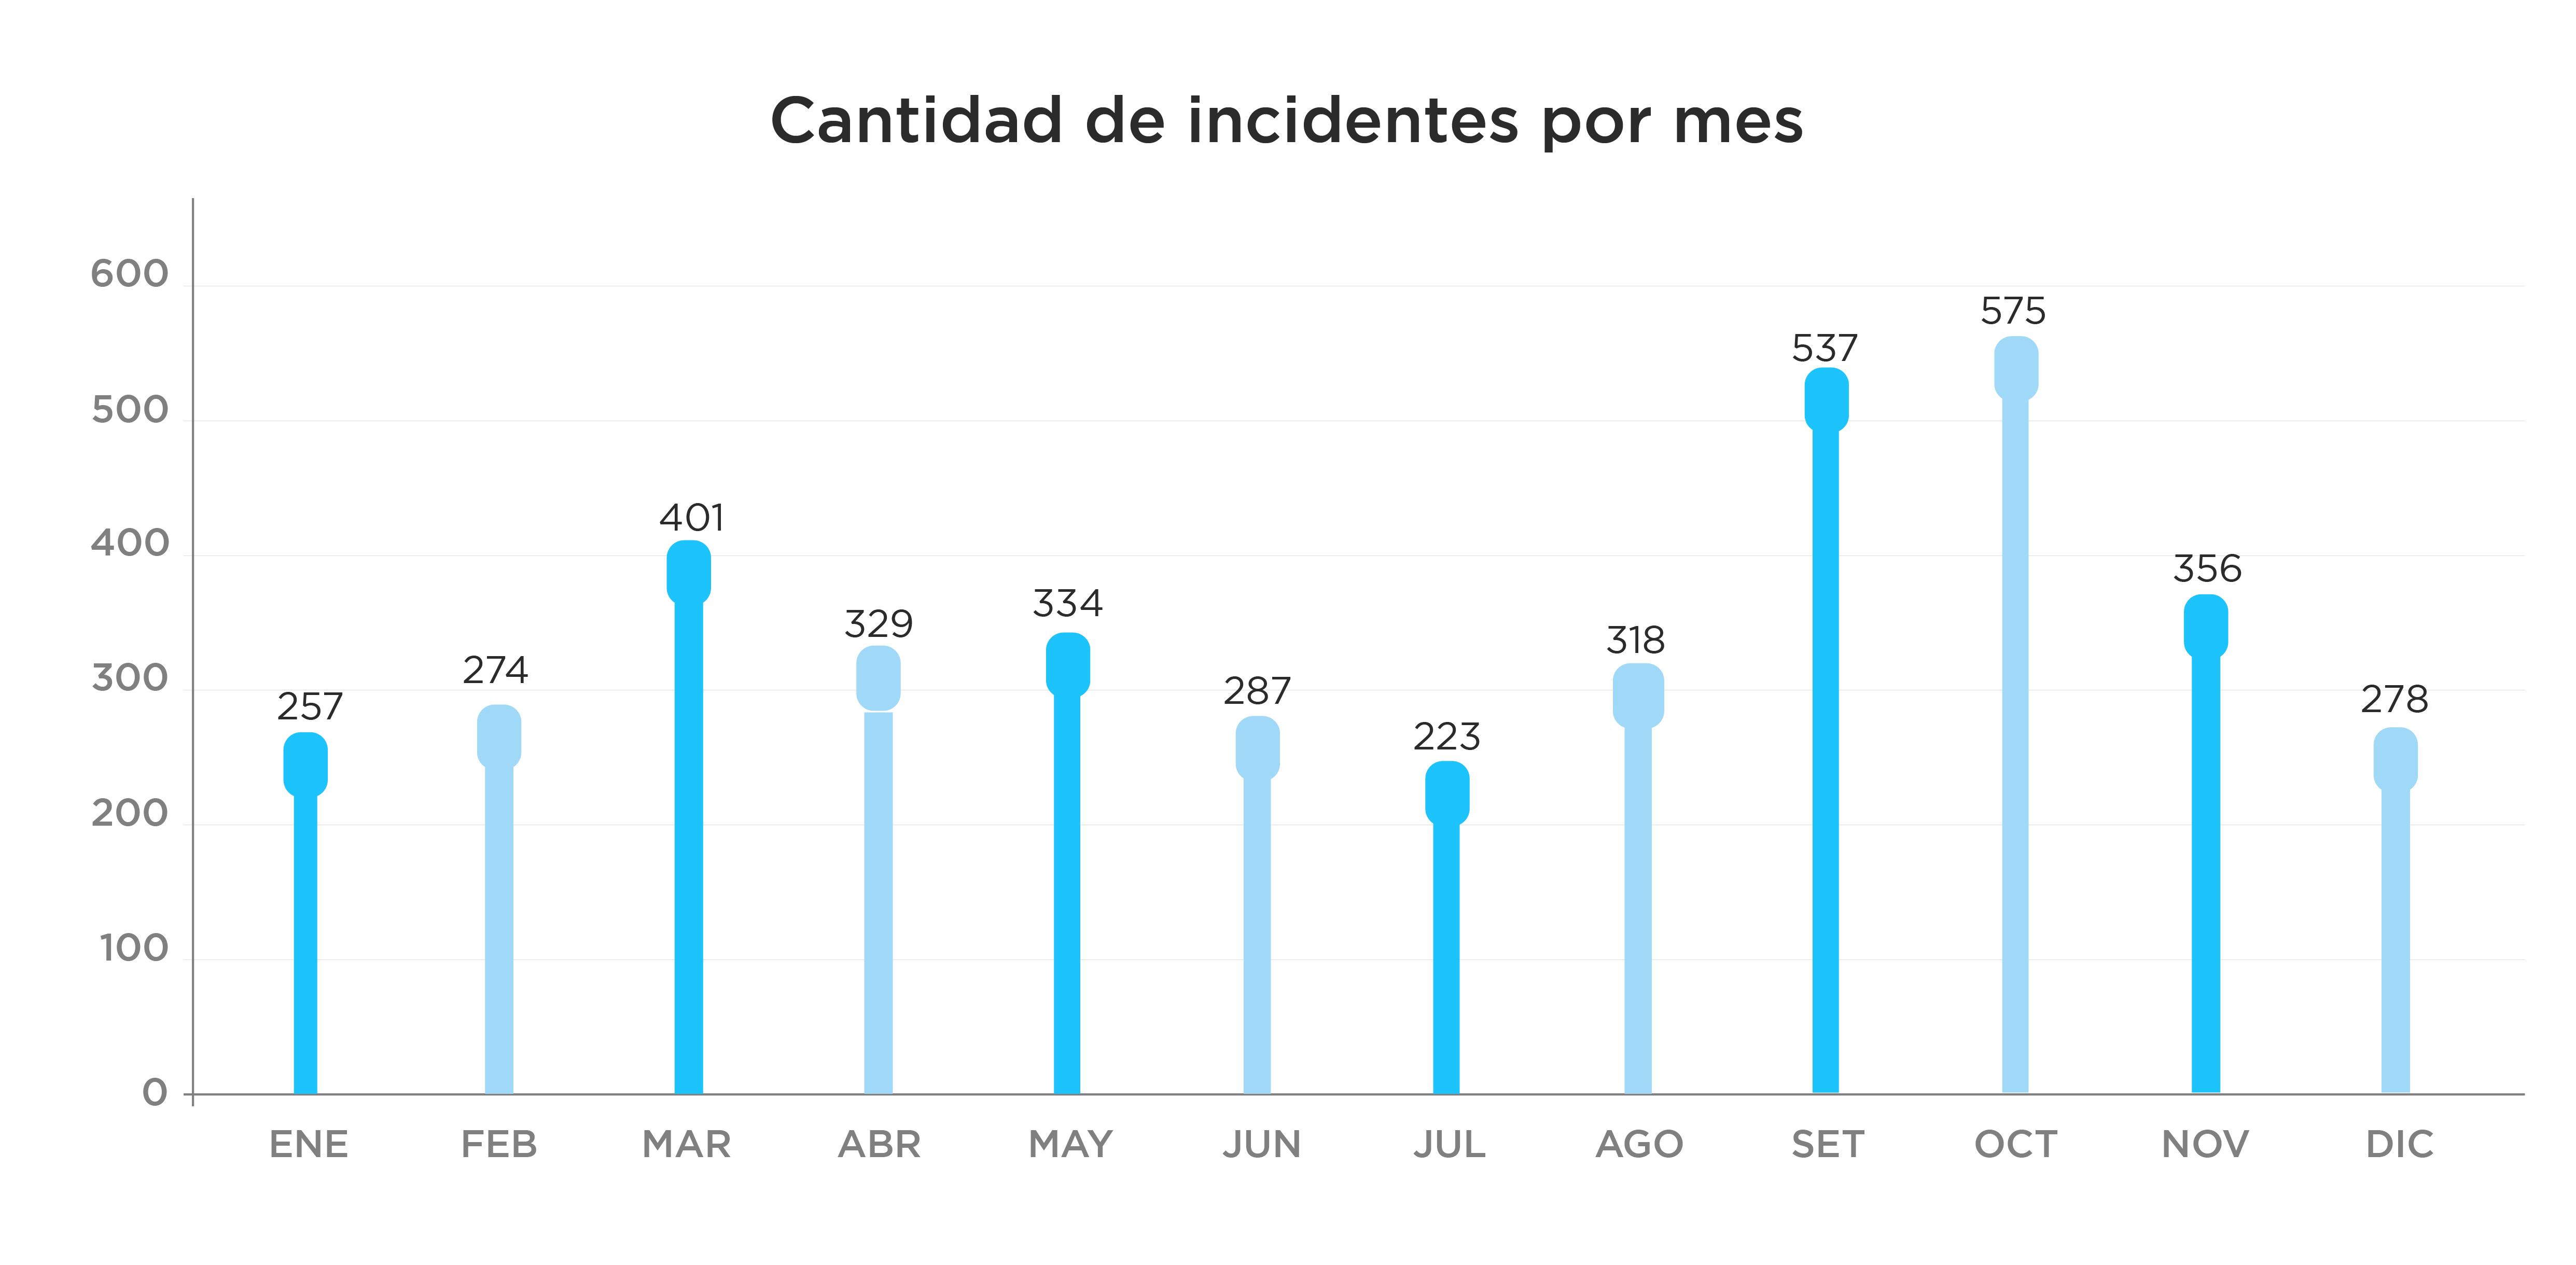 Gráfico de barras con la cantidad mensual de incidentes de seguridad durante 2022: enero 257, febrero 274, marzo 401, abril 329, mayo 334, junio 287, julio 223, agosto 318, setiembre 537, octubre 575, noviembre 356, diciembre 278.